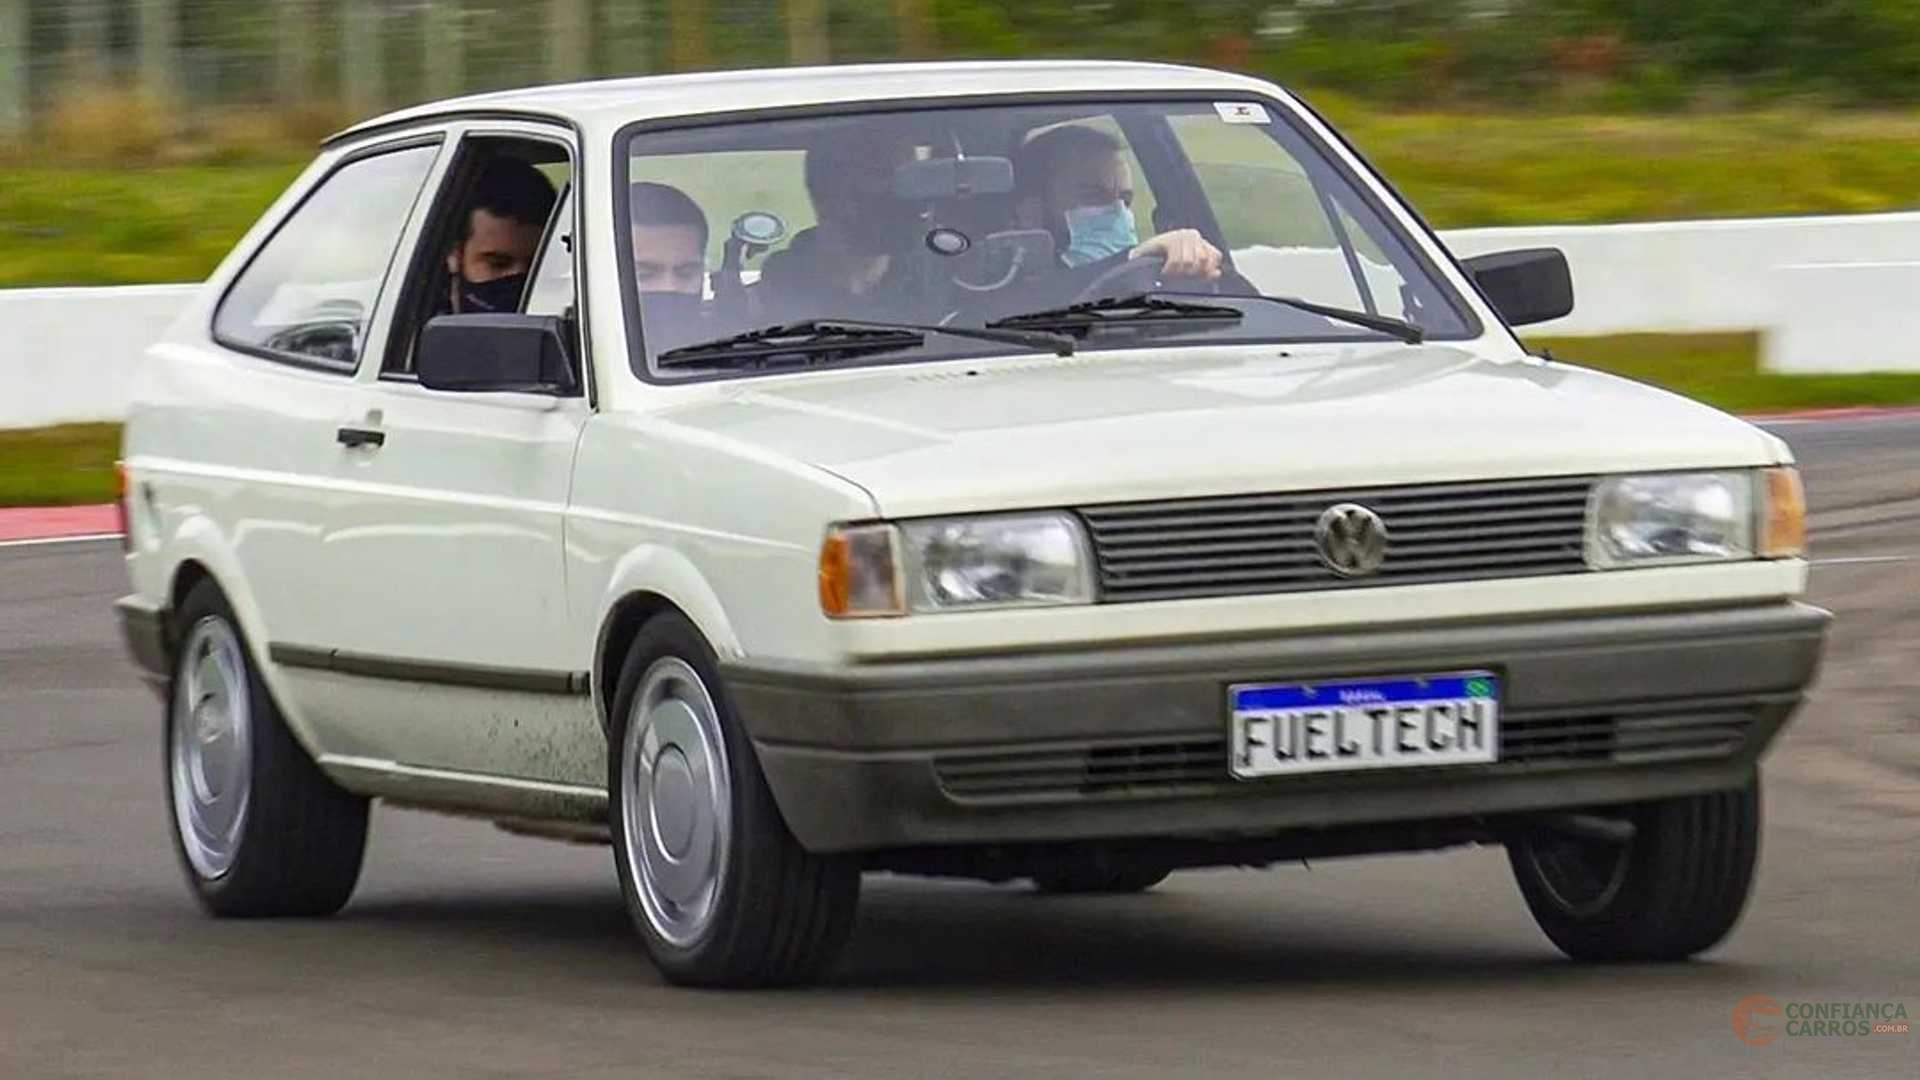 Volkswagen Gol GTI 1994: o último e melhor dos quadrados